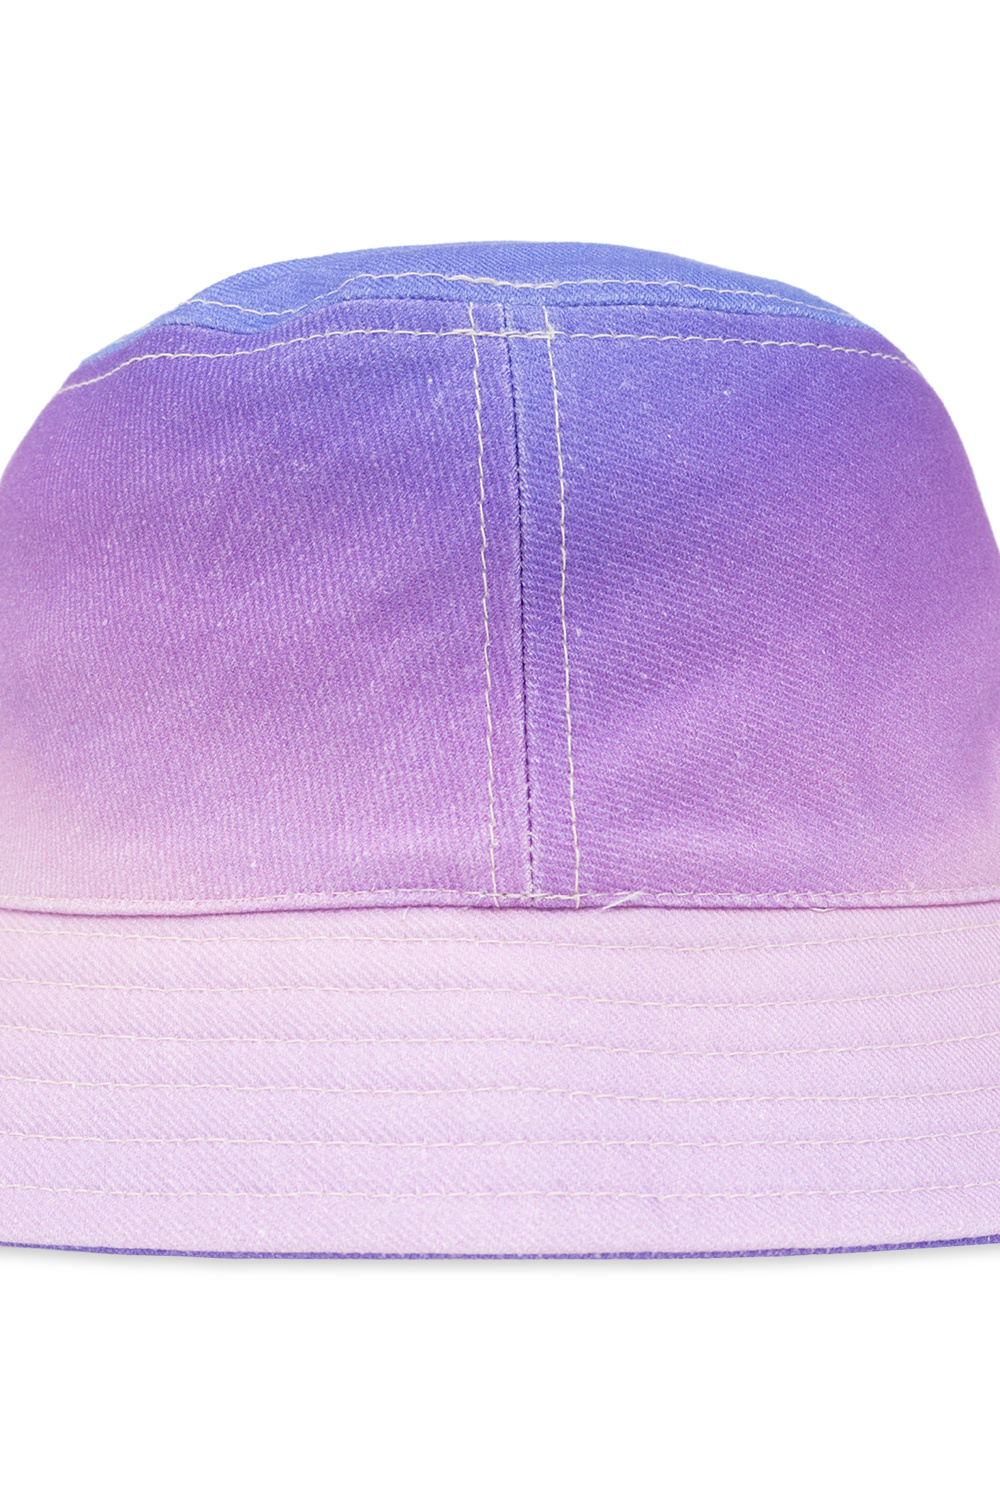 MARANT ‘Haleyh’ bucket hat